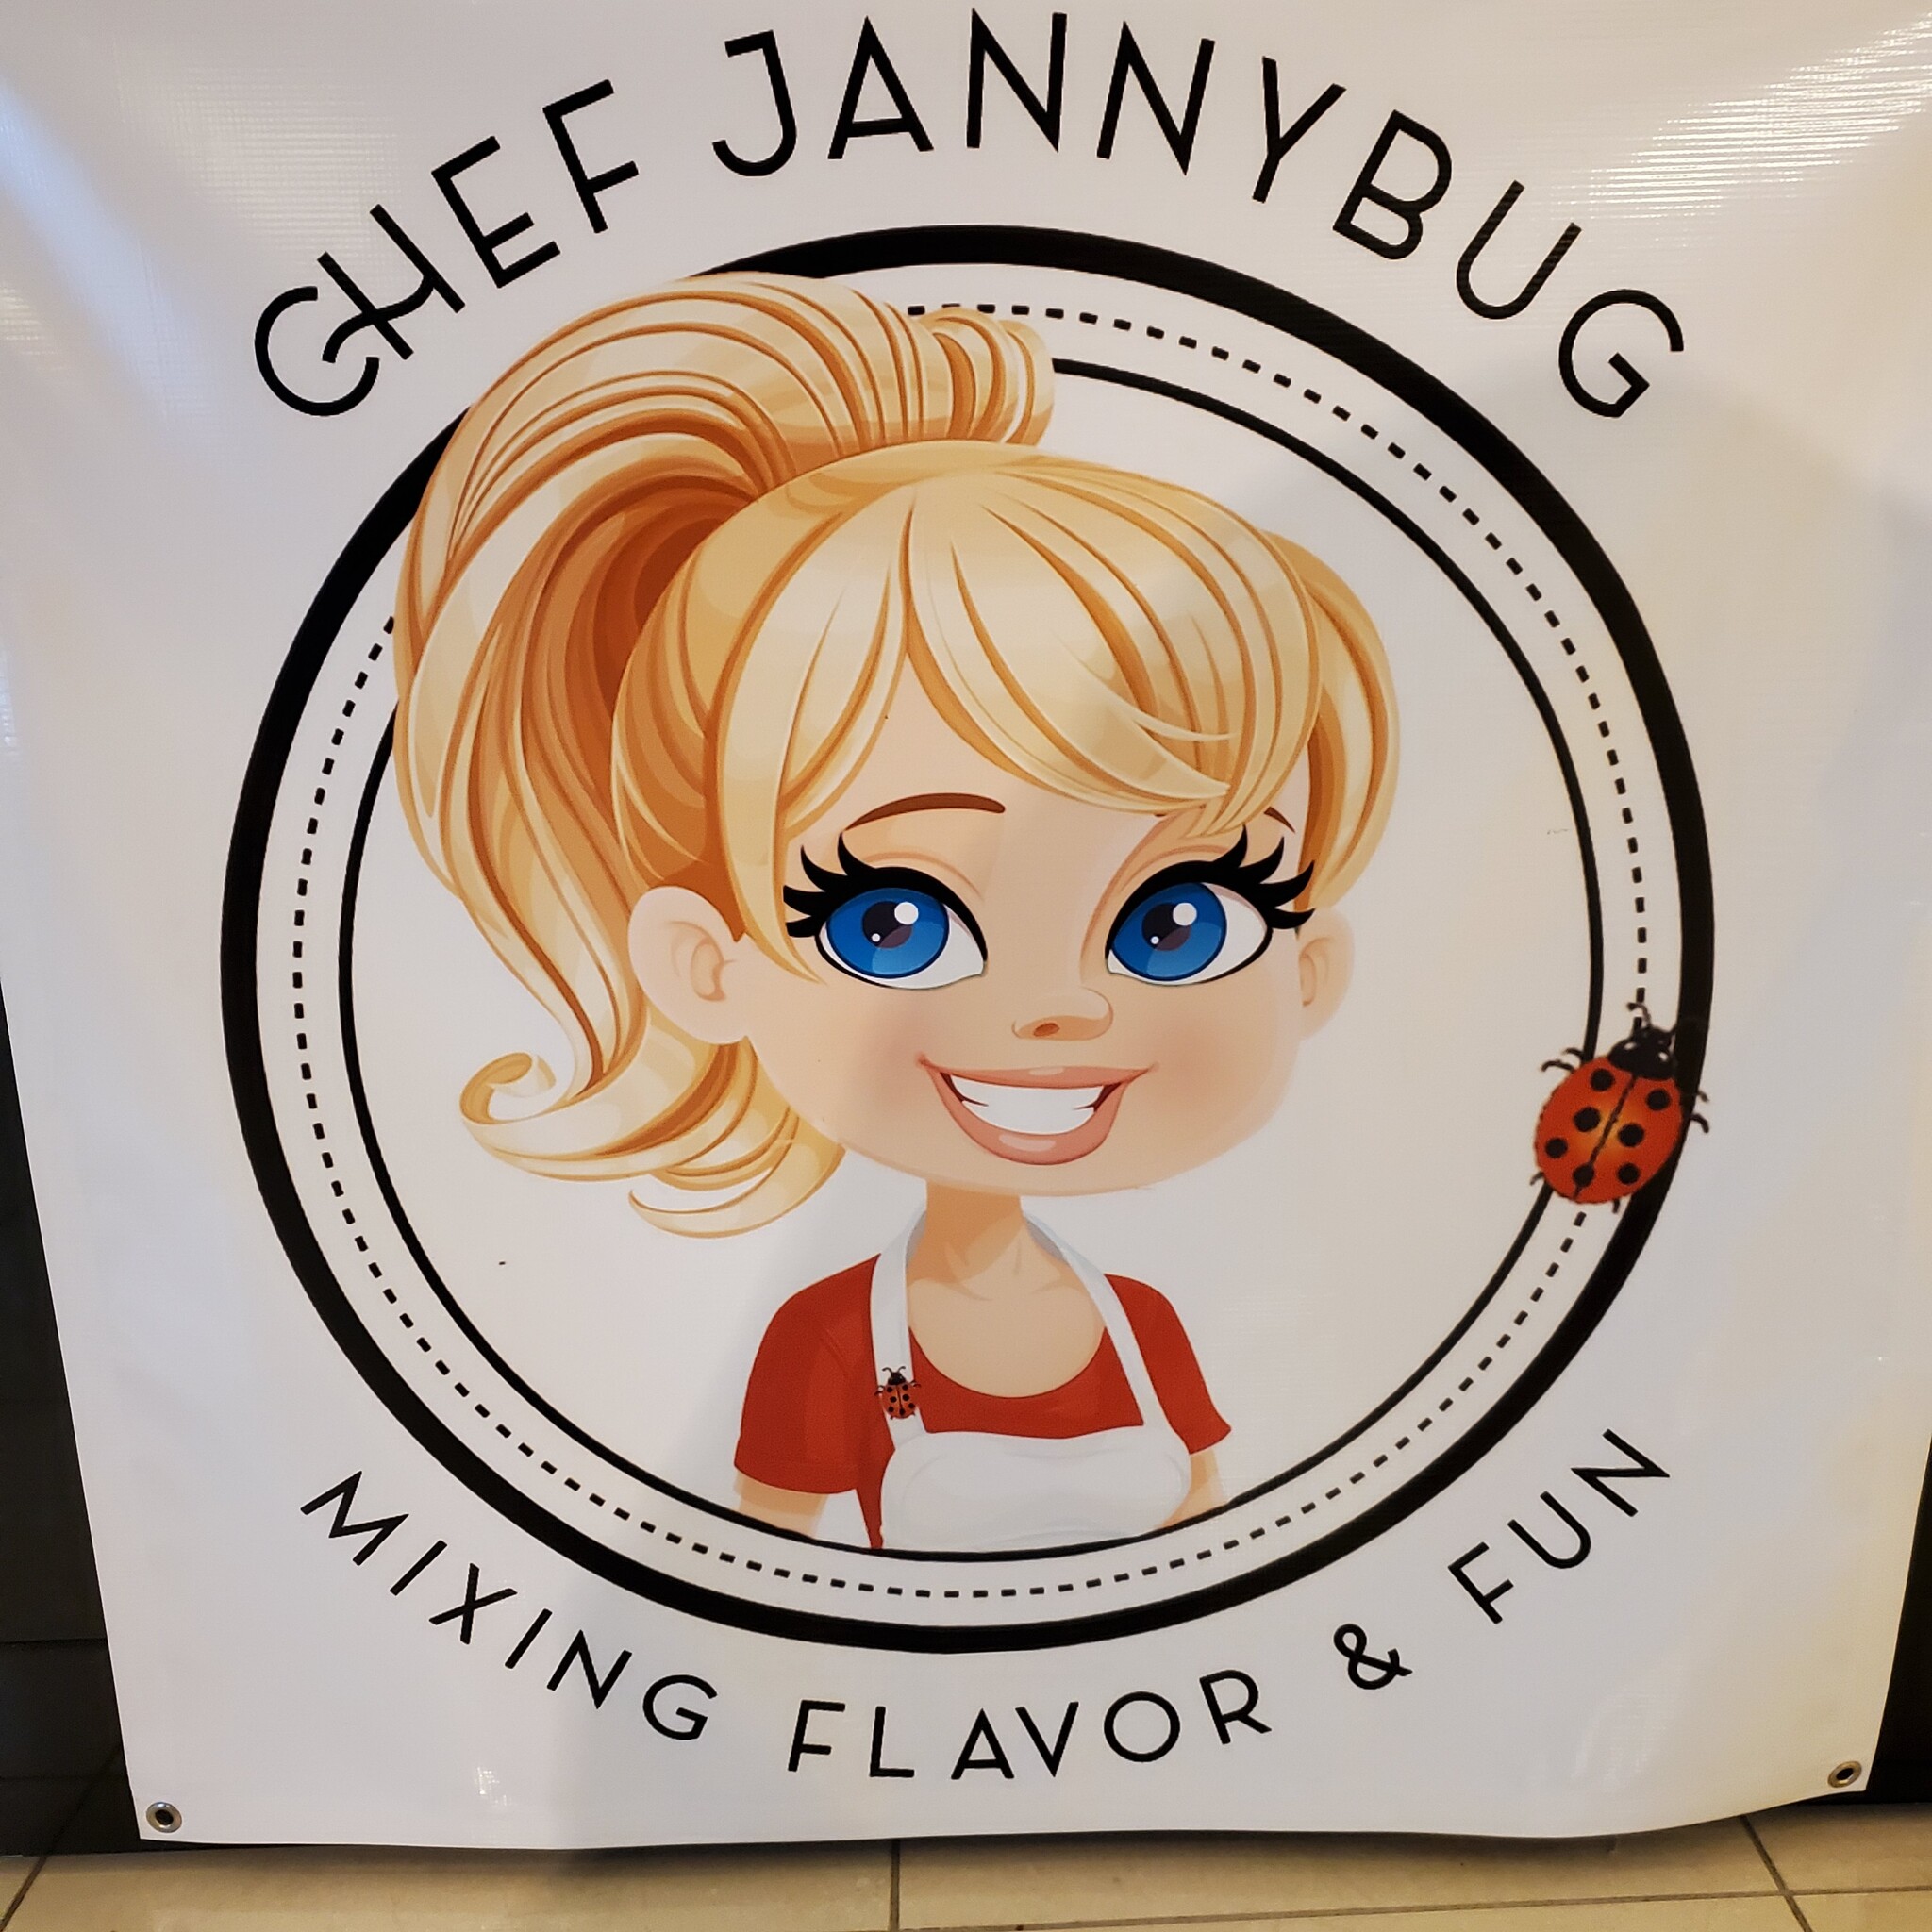 Chef Jannybug